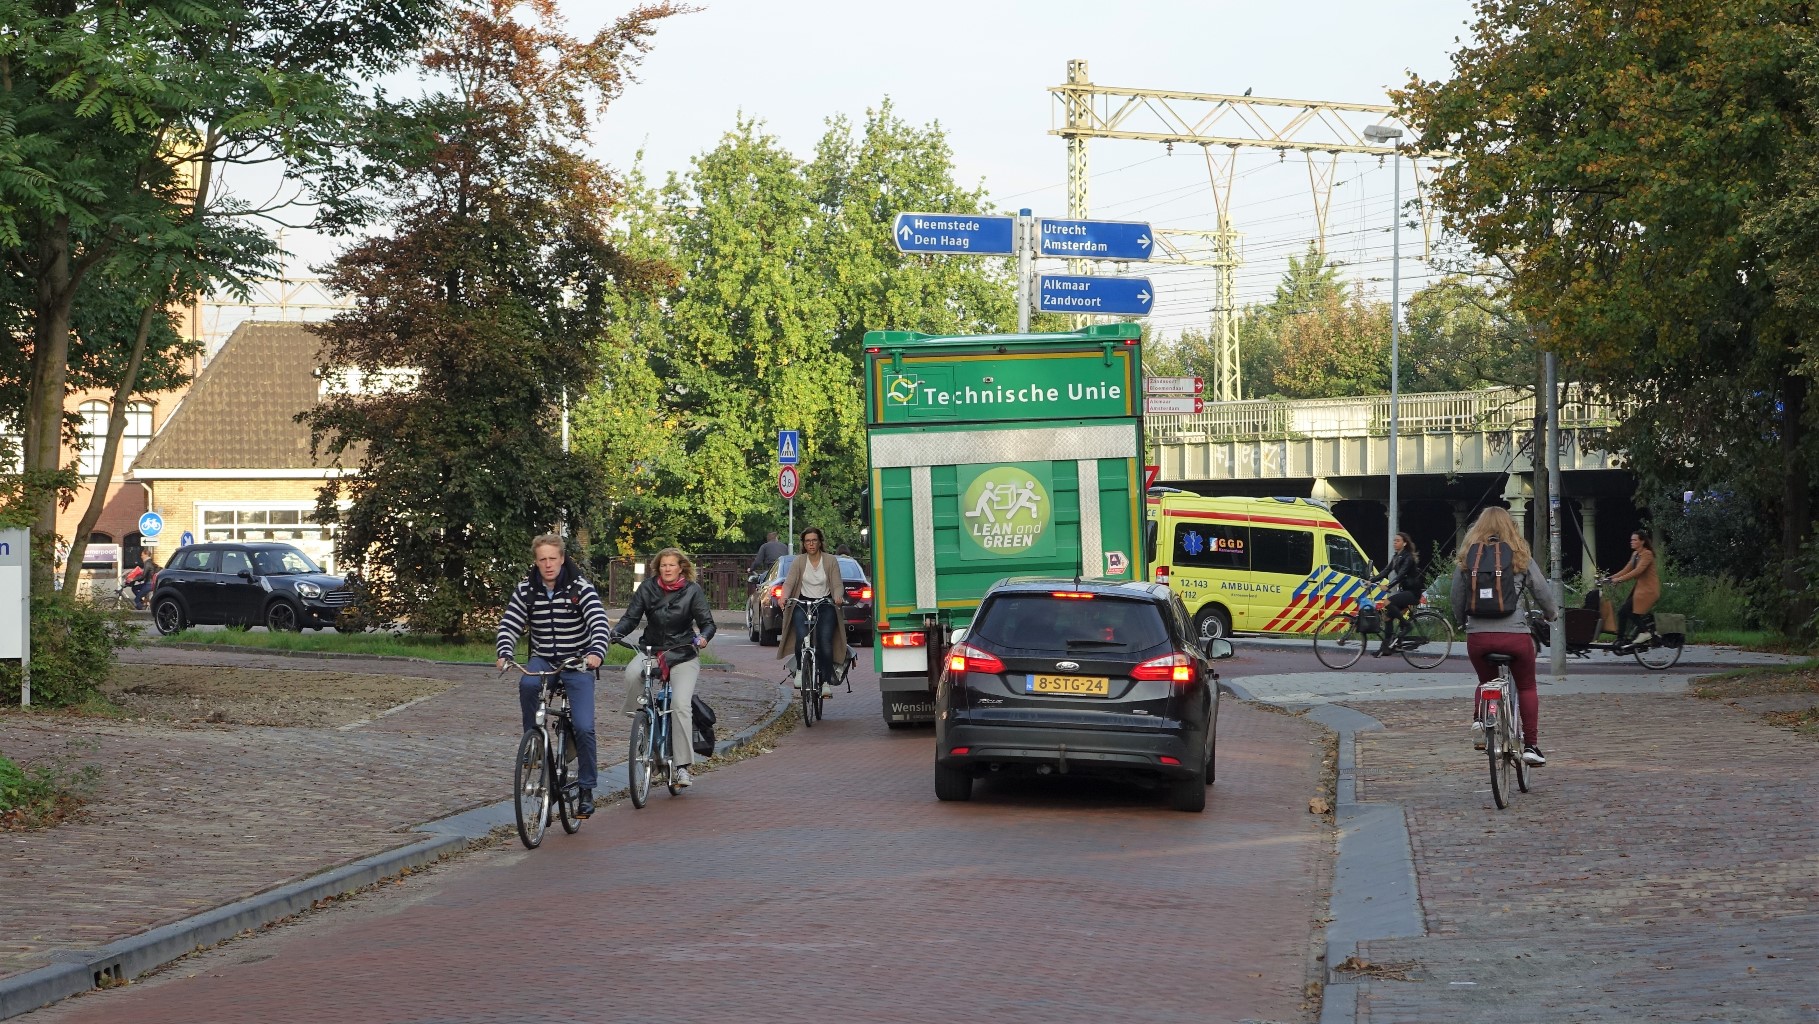 De situatie voor de fietsers en voetgangers